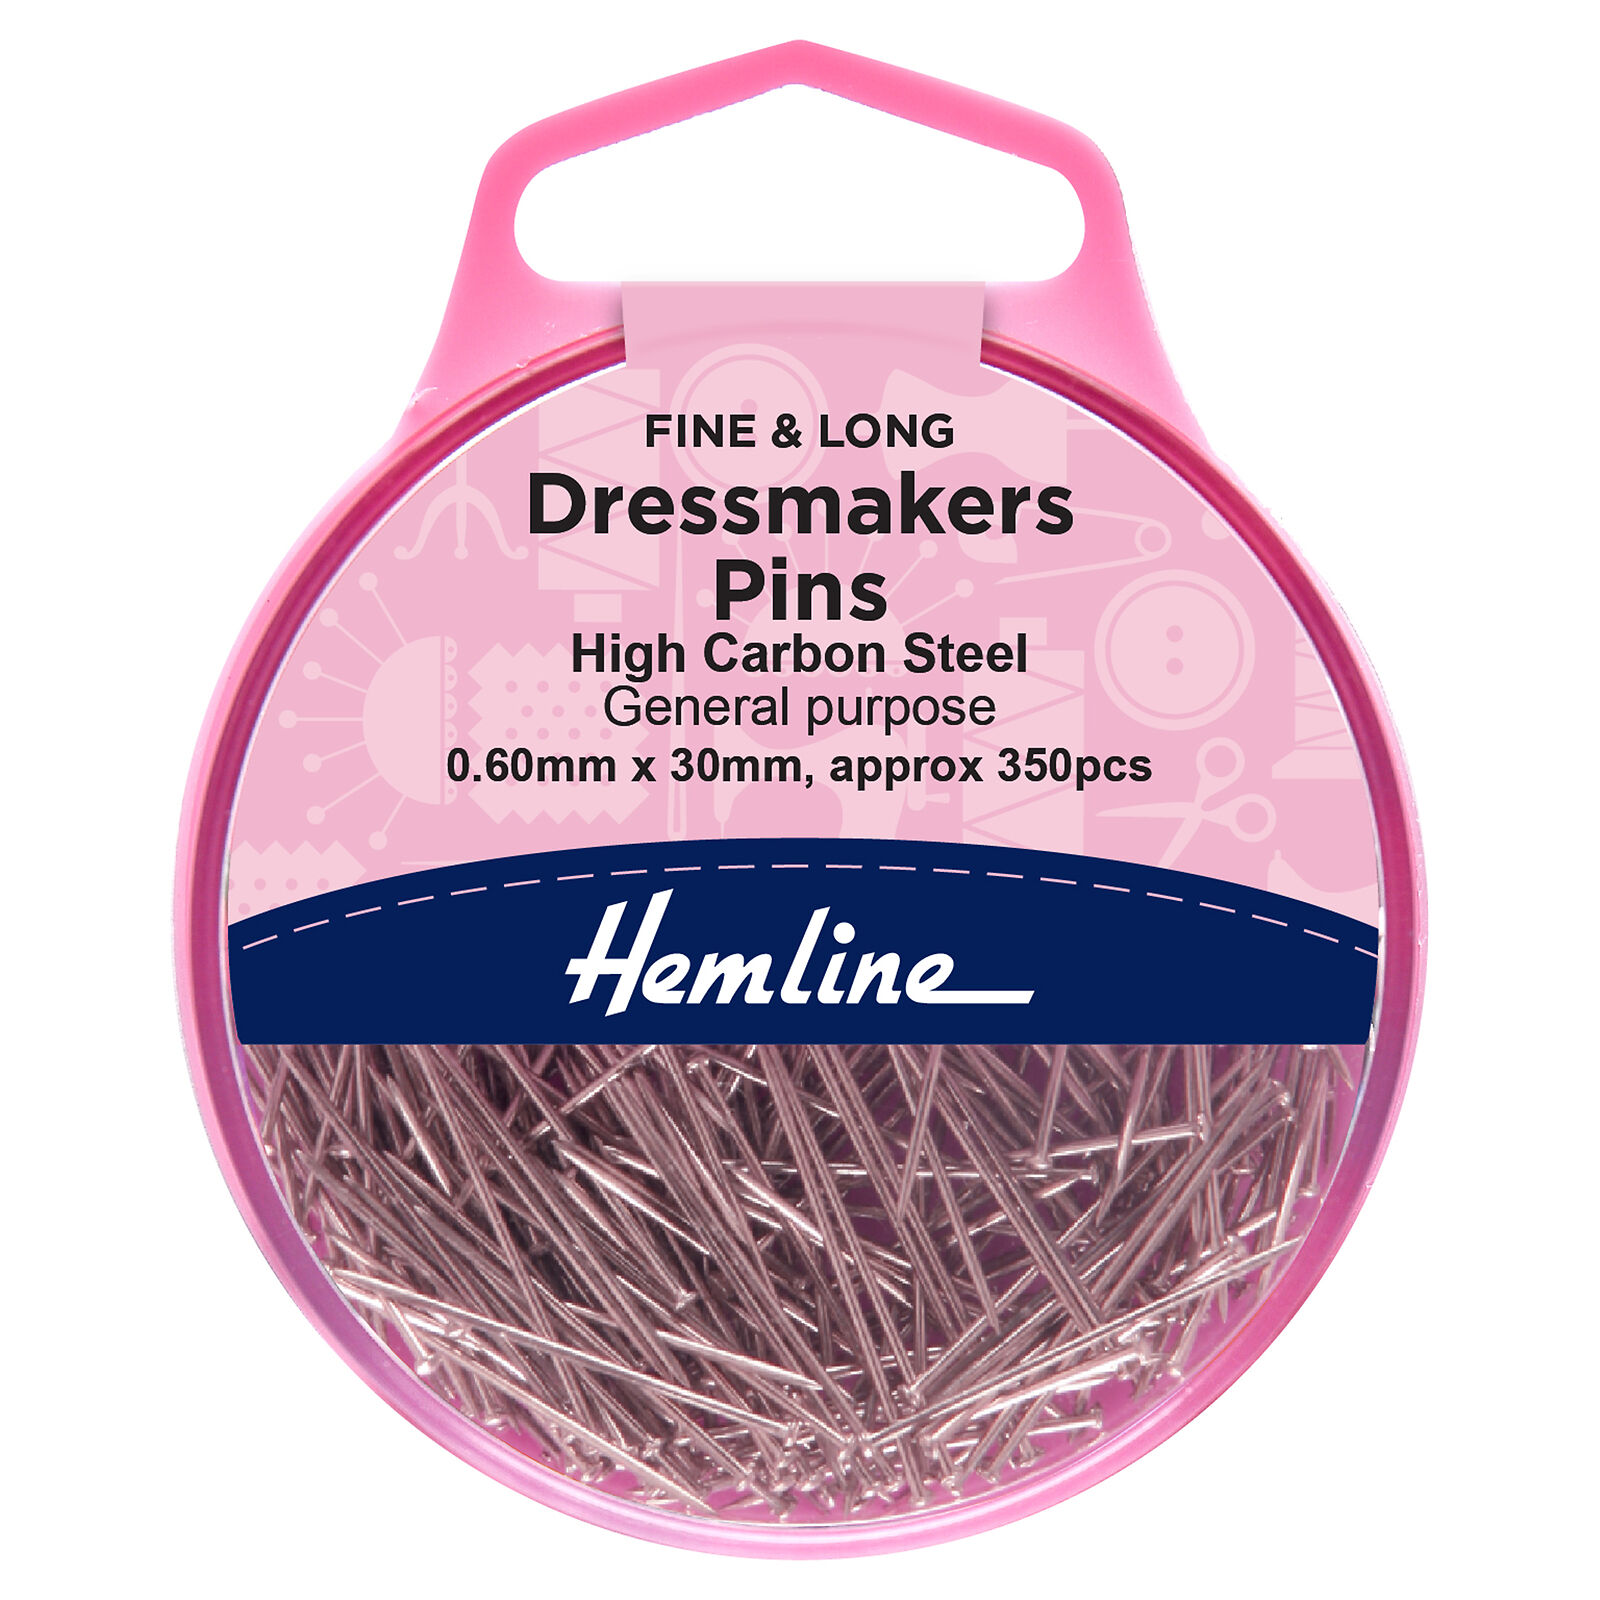 Hemline Nickel Dressmaker's Pins 30mm